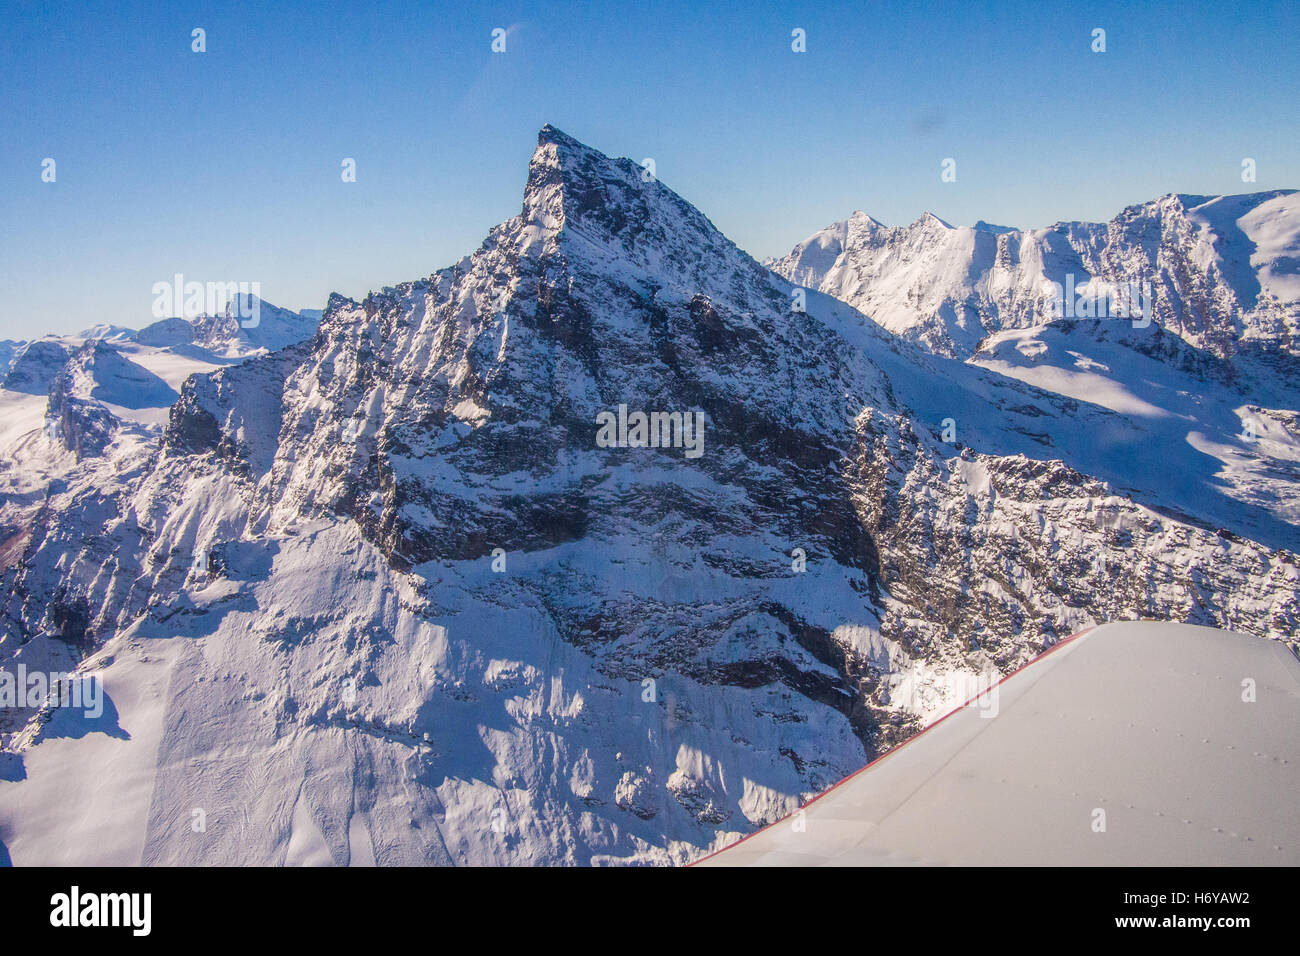 Cervino / Matterhorn Berg an der italienisch/schweizerischen Grenze aus Sicht eines Leichtflugzeugs, Aostatal, Italien. Stockfoto